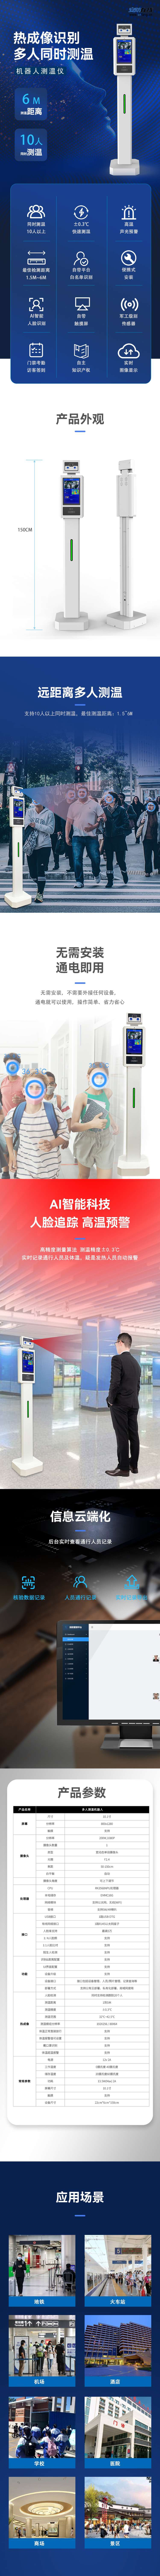 【多人测温机器人】- 多人测温、机器人、人脸识别 -【广州网视通信息科技有限公司】